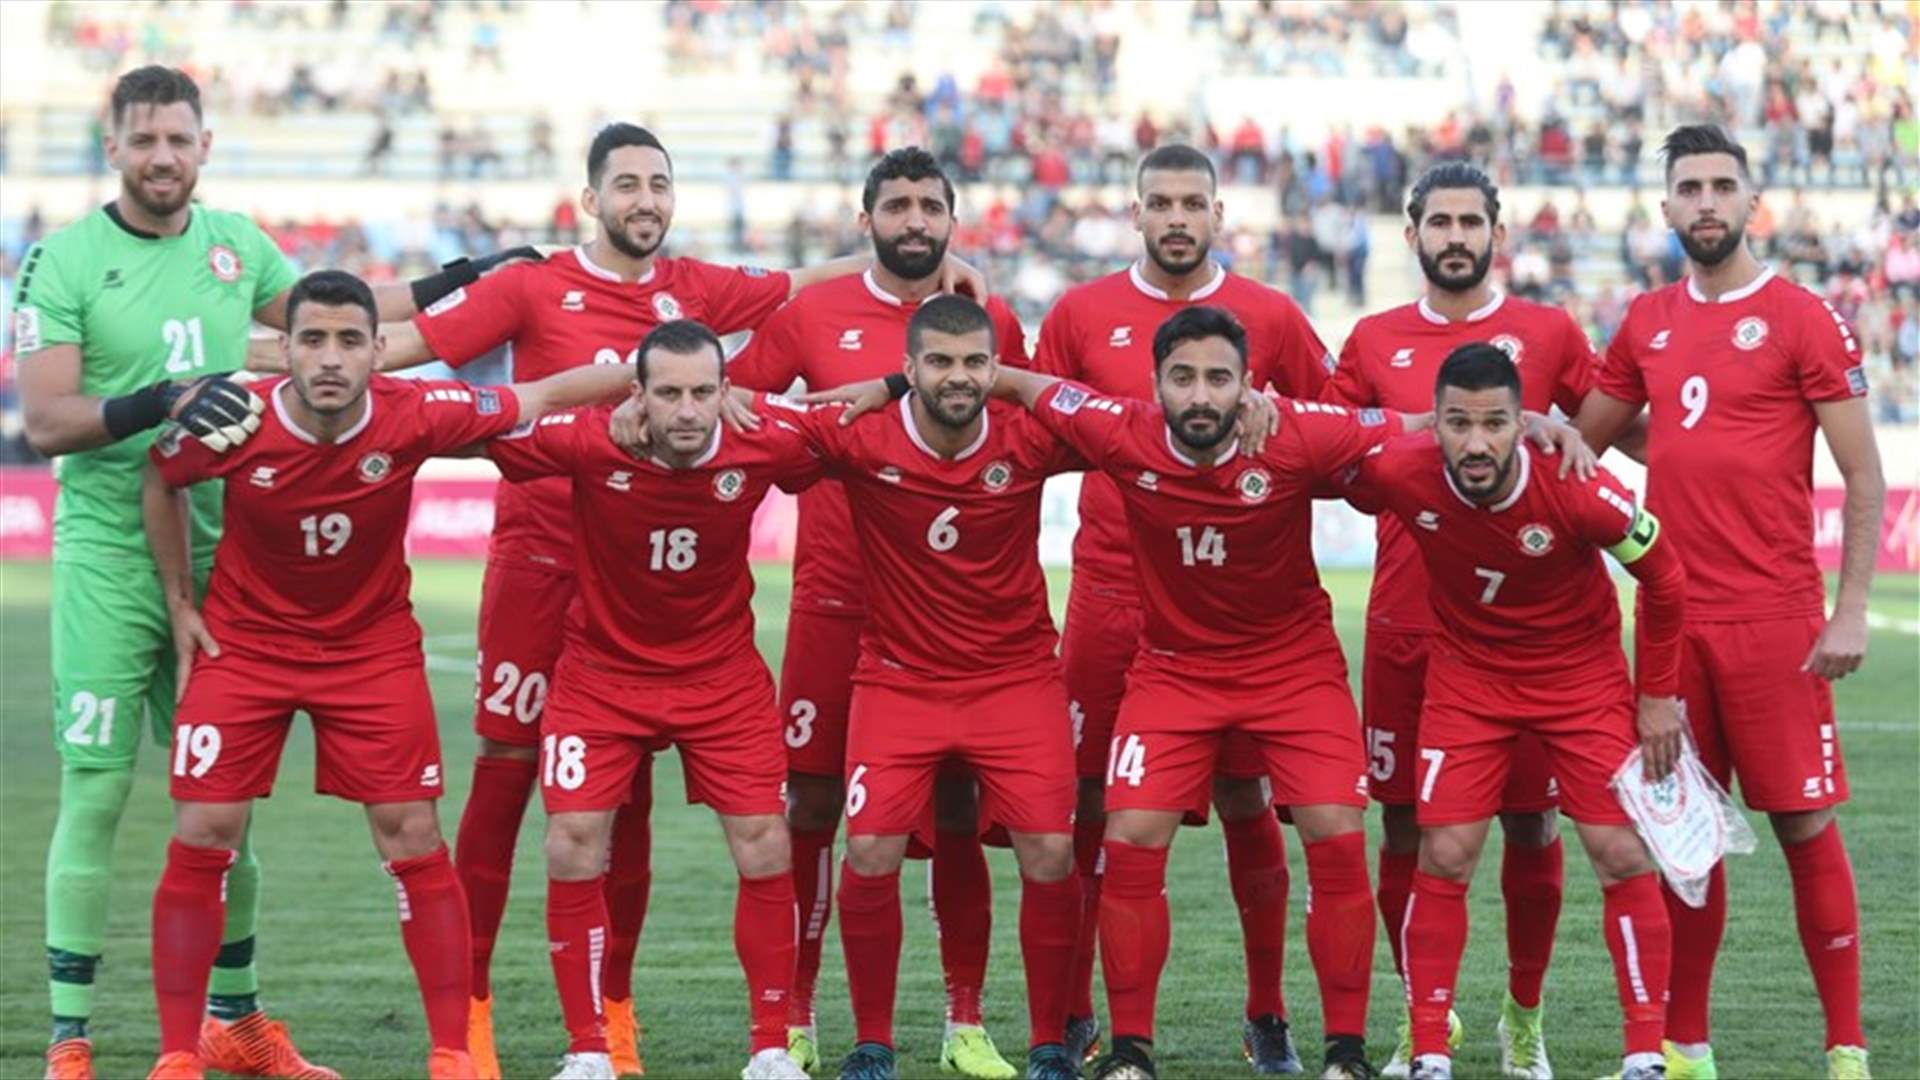 منتخب لبنان لكرة القدم يدخل معسكراً تحضيراً لنهائيات كأس آسيا 2019